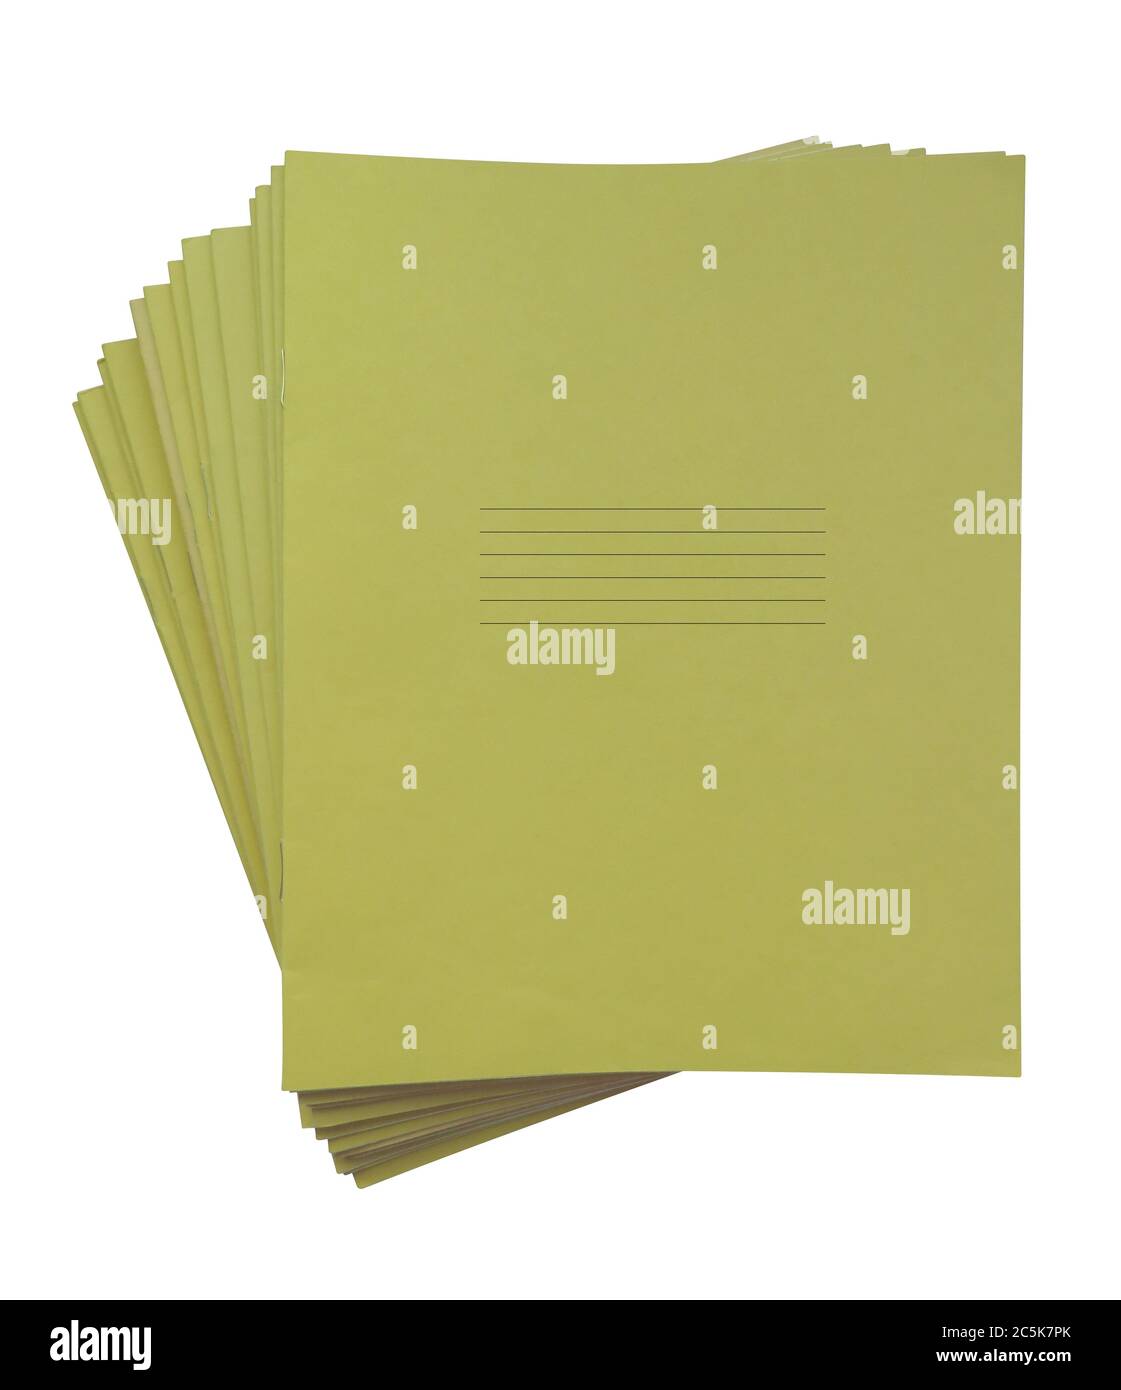 Stapel von gelben Notizbüchern isoliert auf einem weißen. Beschneidungspfad enthalten. Stockfoto